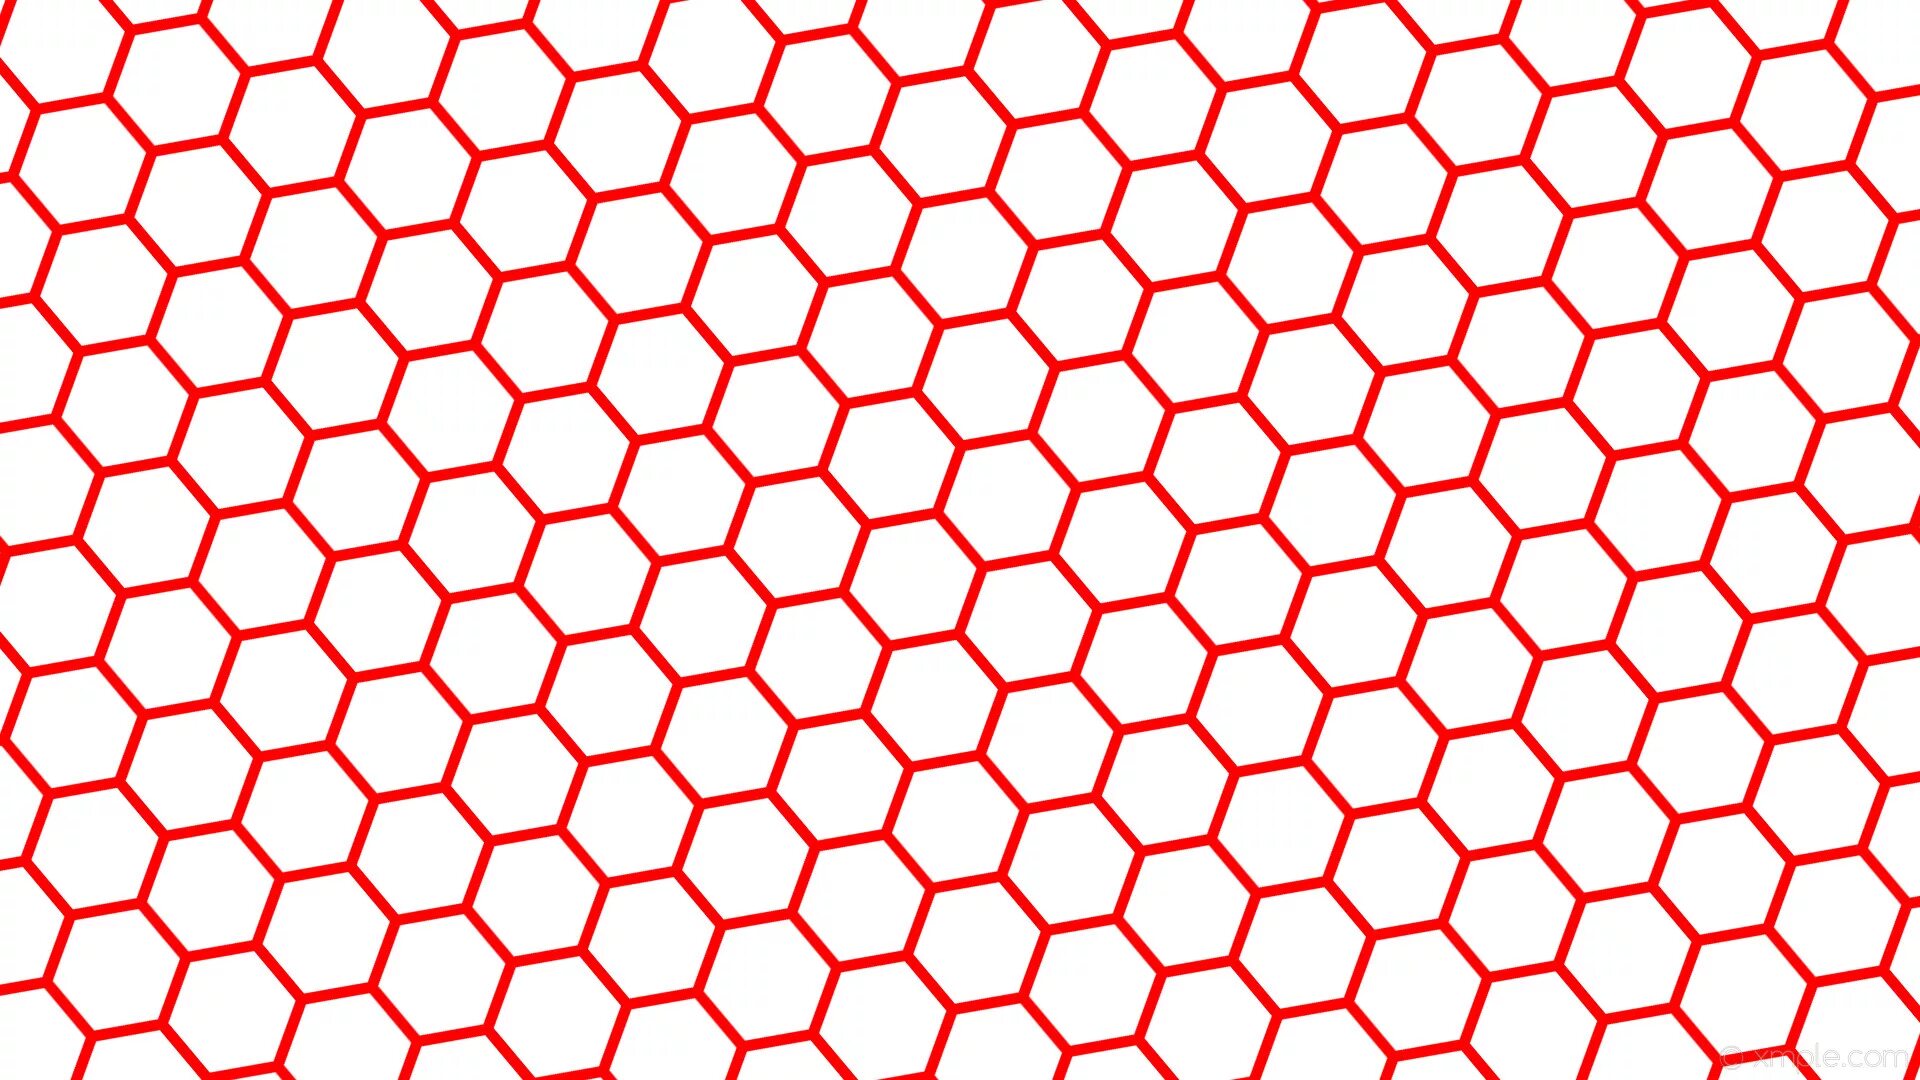 Сетка октагон вектор. Isometric Hexagon сетка. Гексагональная сетка вектор. Сетка пчелиные соты.